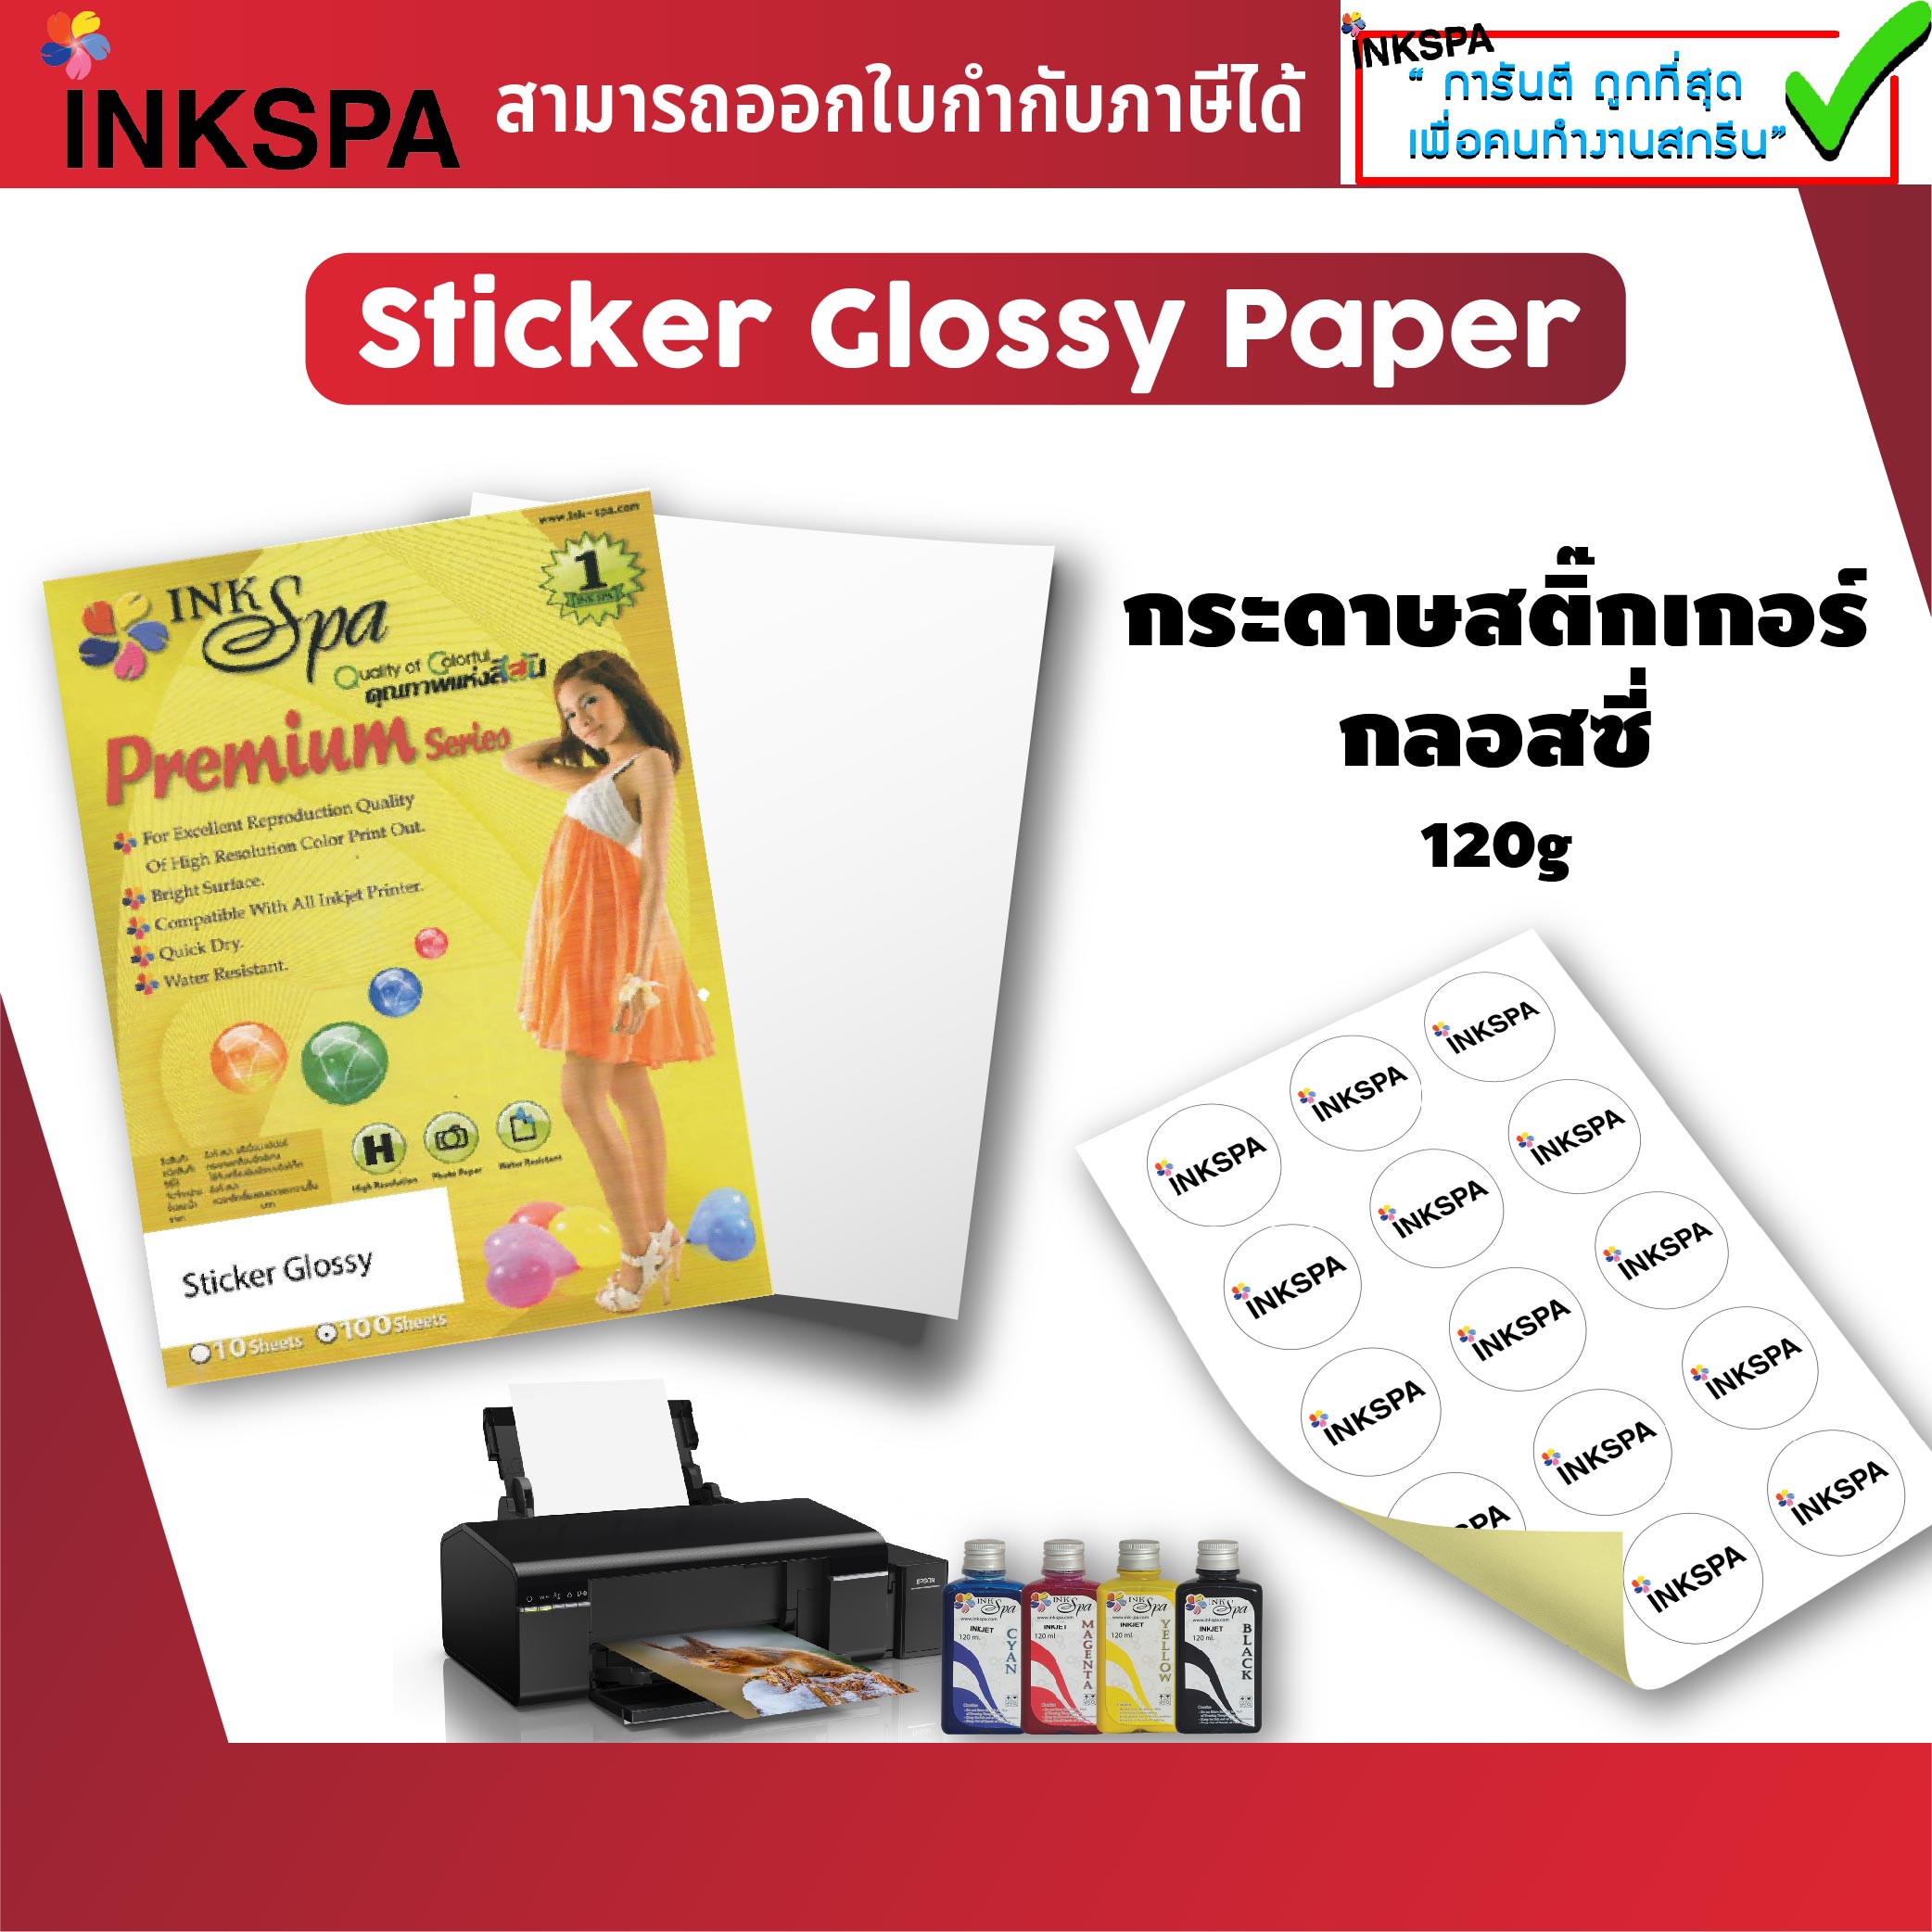 กระดาษ Sticker Glossy ขนาด A4 1 แพ็ค 100 แผ่น กระดาษสติ๊กเกอร์กลอสซี่ กระดาษสติ๊กเกอร์เคลือบสารพิเศษ กันน้ำ เพื่อ พิมพ์งานภาพถ่าย พื้นผิวเคลือบเงา ให้สีสัน สดใส สามารถปริ้นภาพ นำไปแปะติด กับสิ่งของต่างๆได้